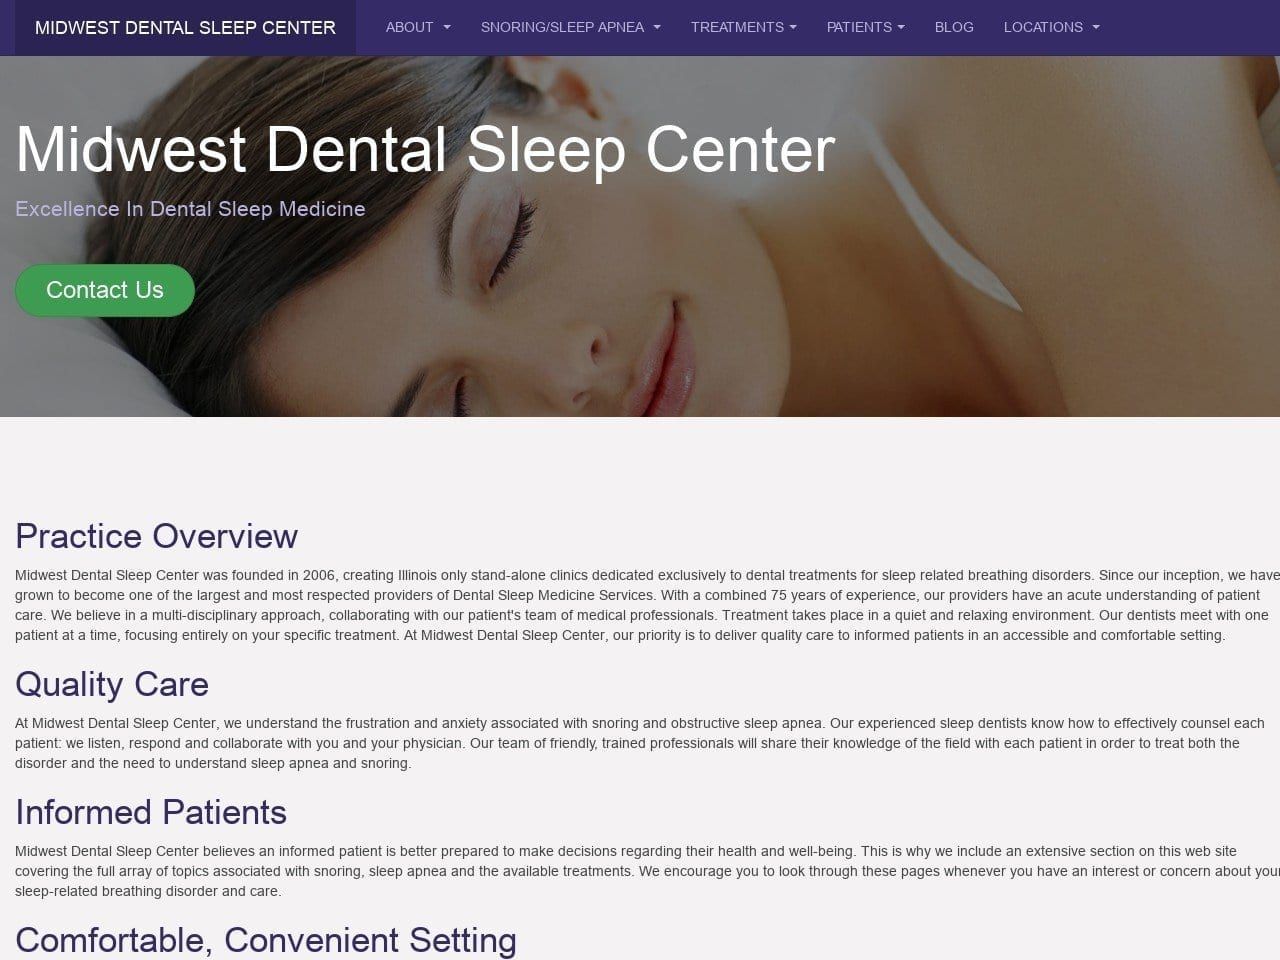 Midwest Dental Sleep Center Website Screenshot from midwestdentalsleepcenter.com